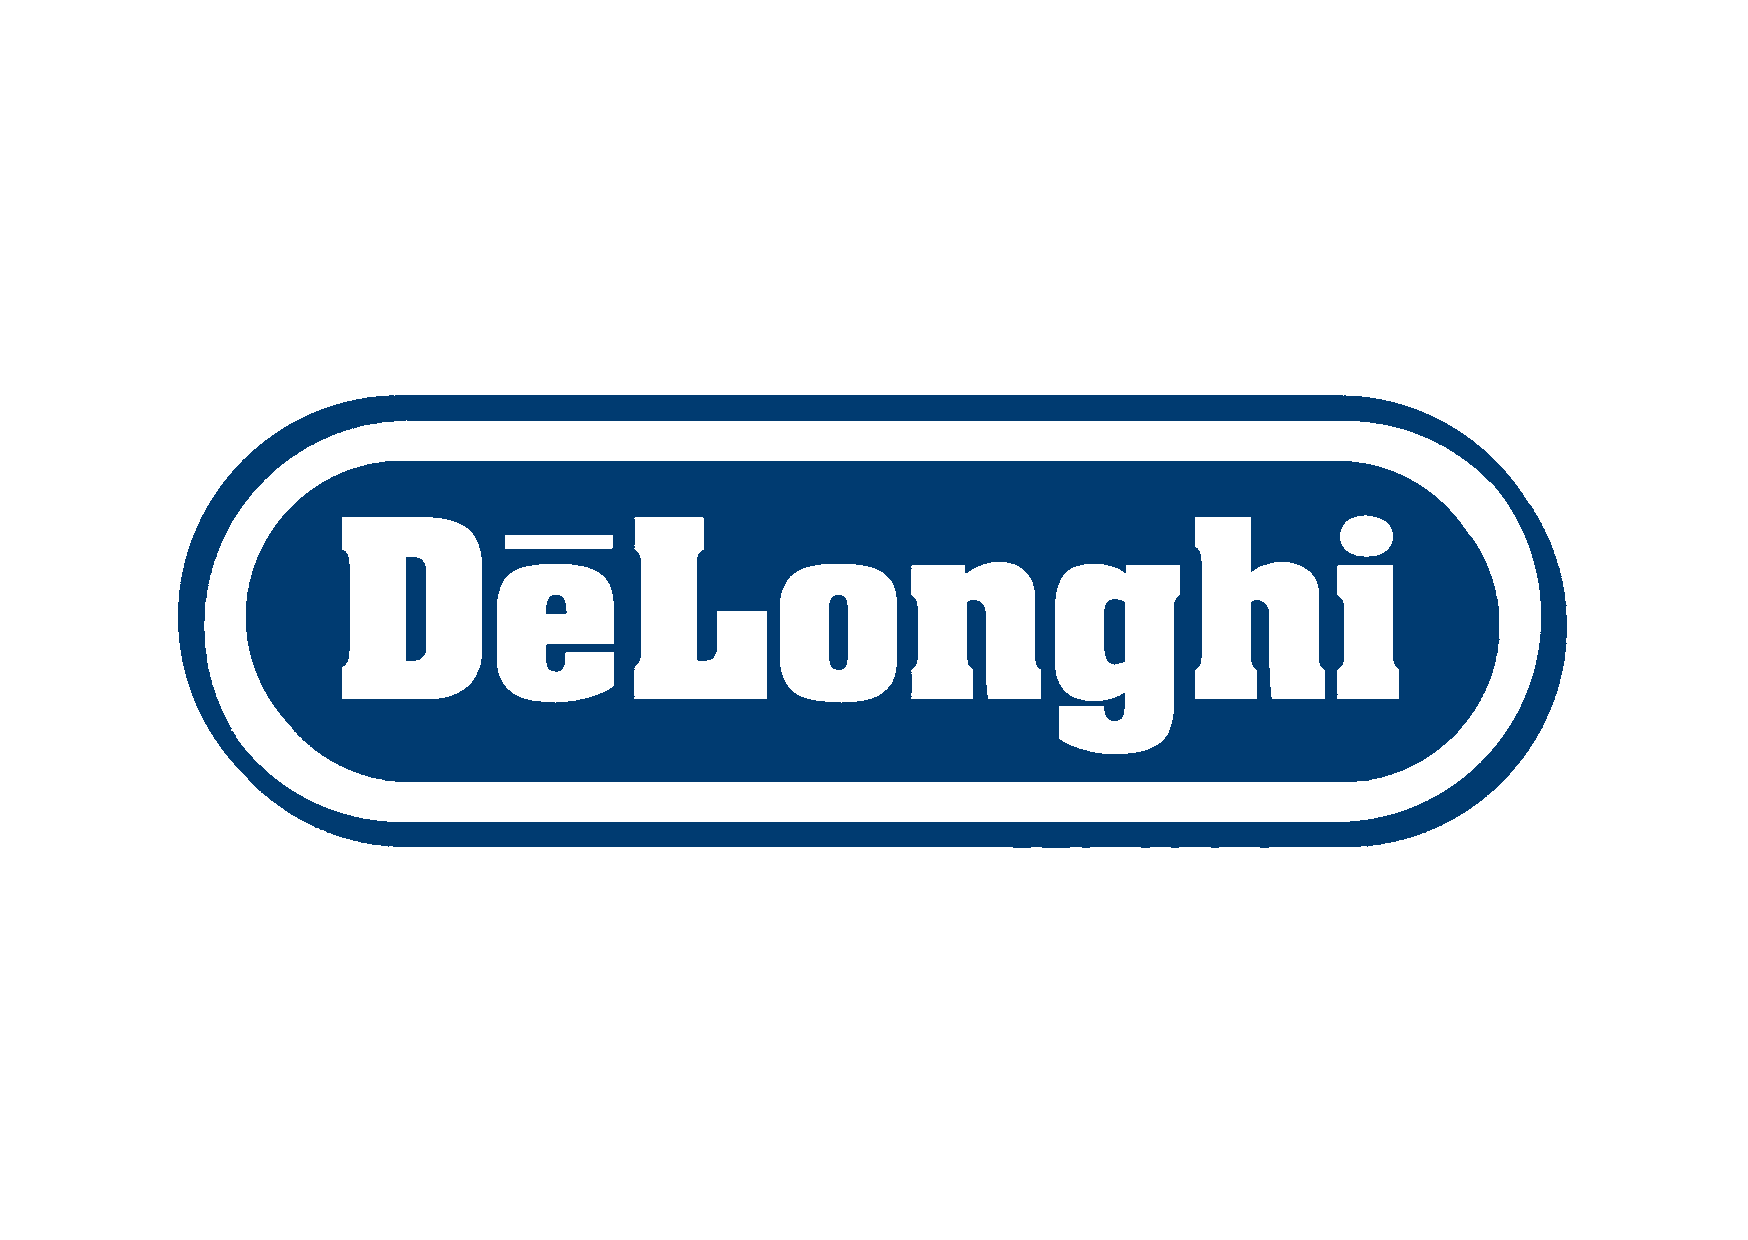 Delonghi Logo In Svg ,jpg, Pn